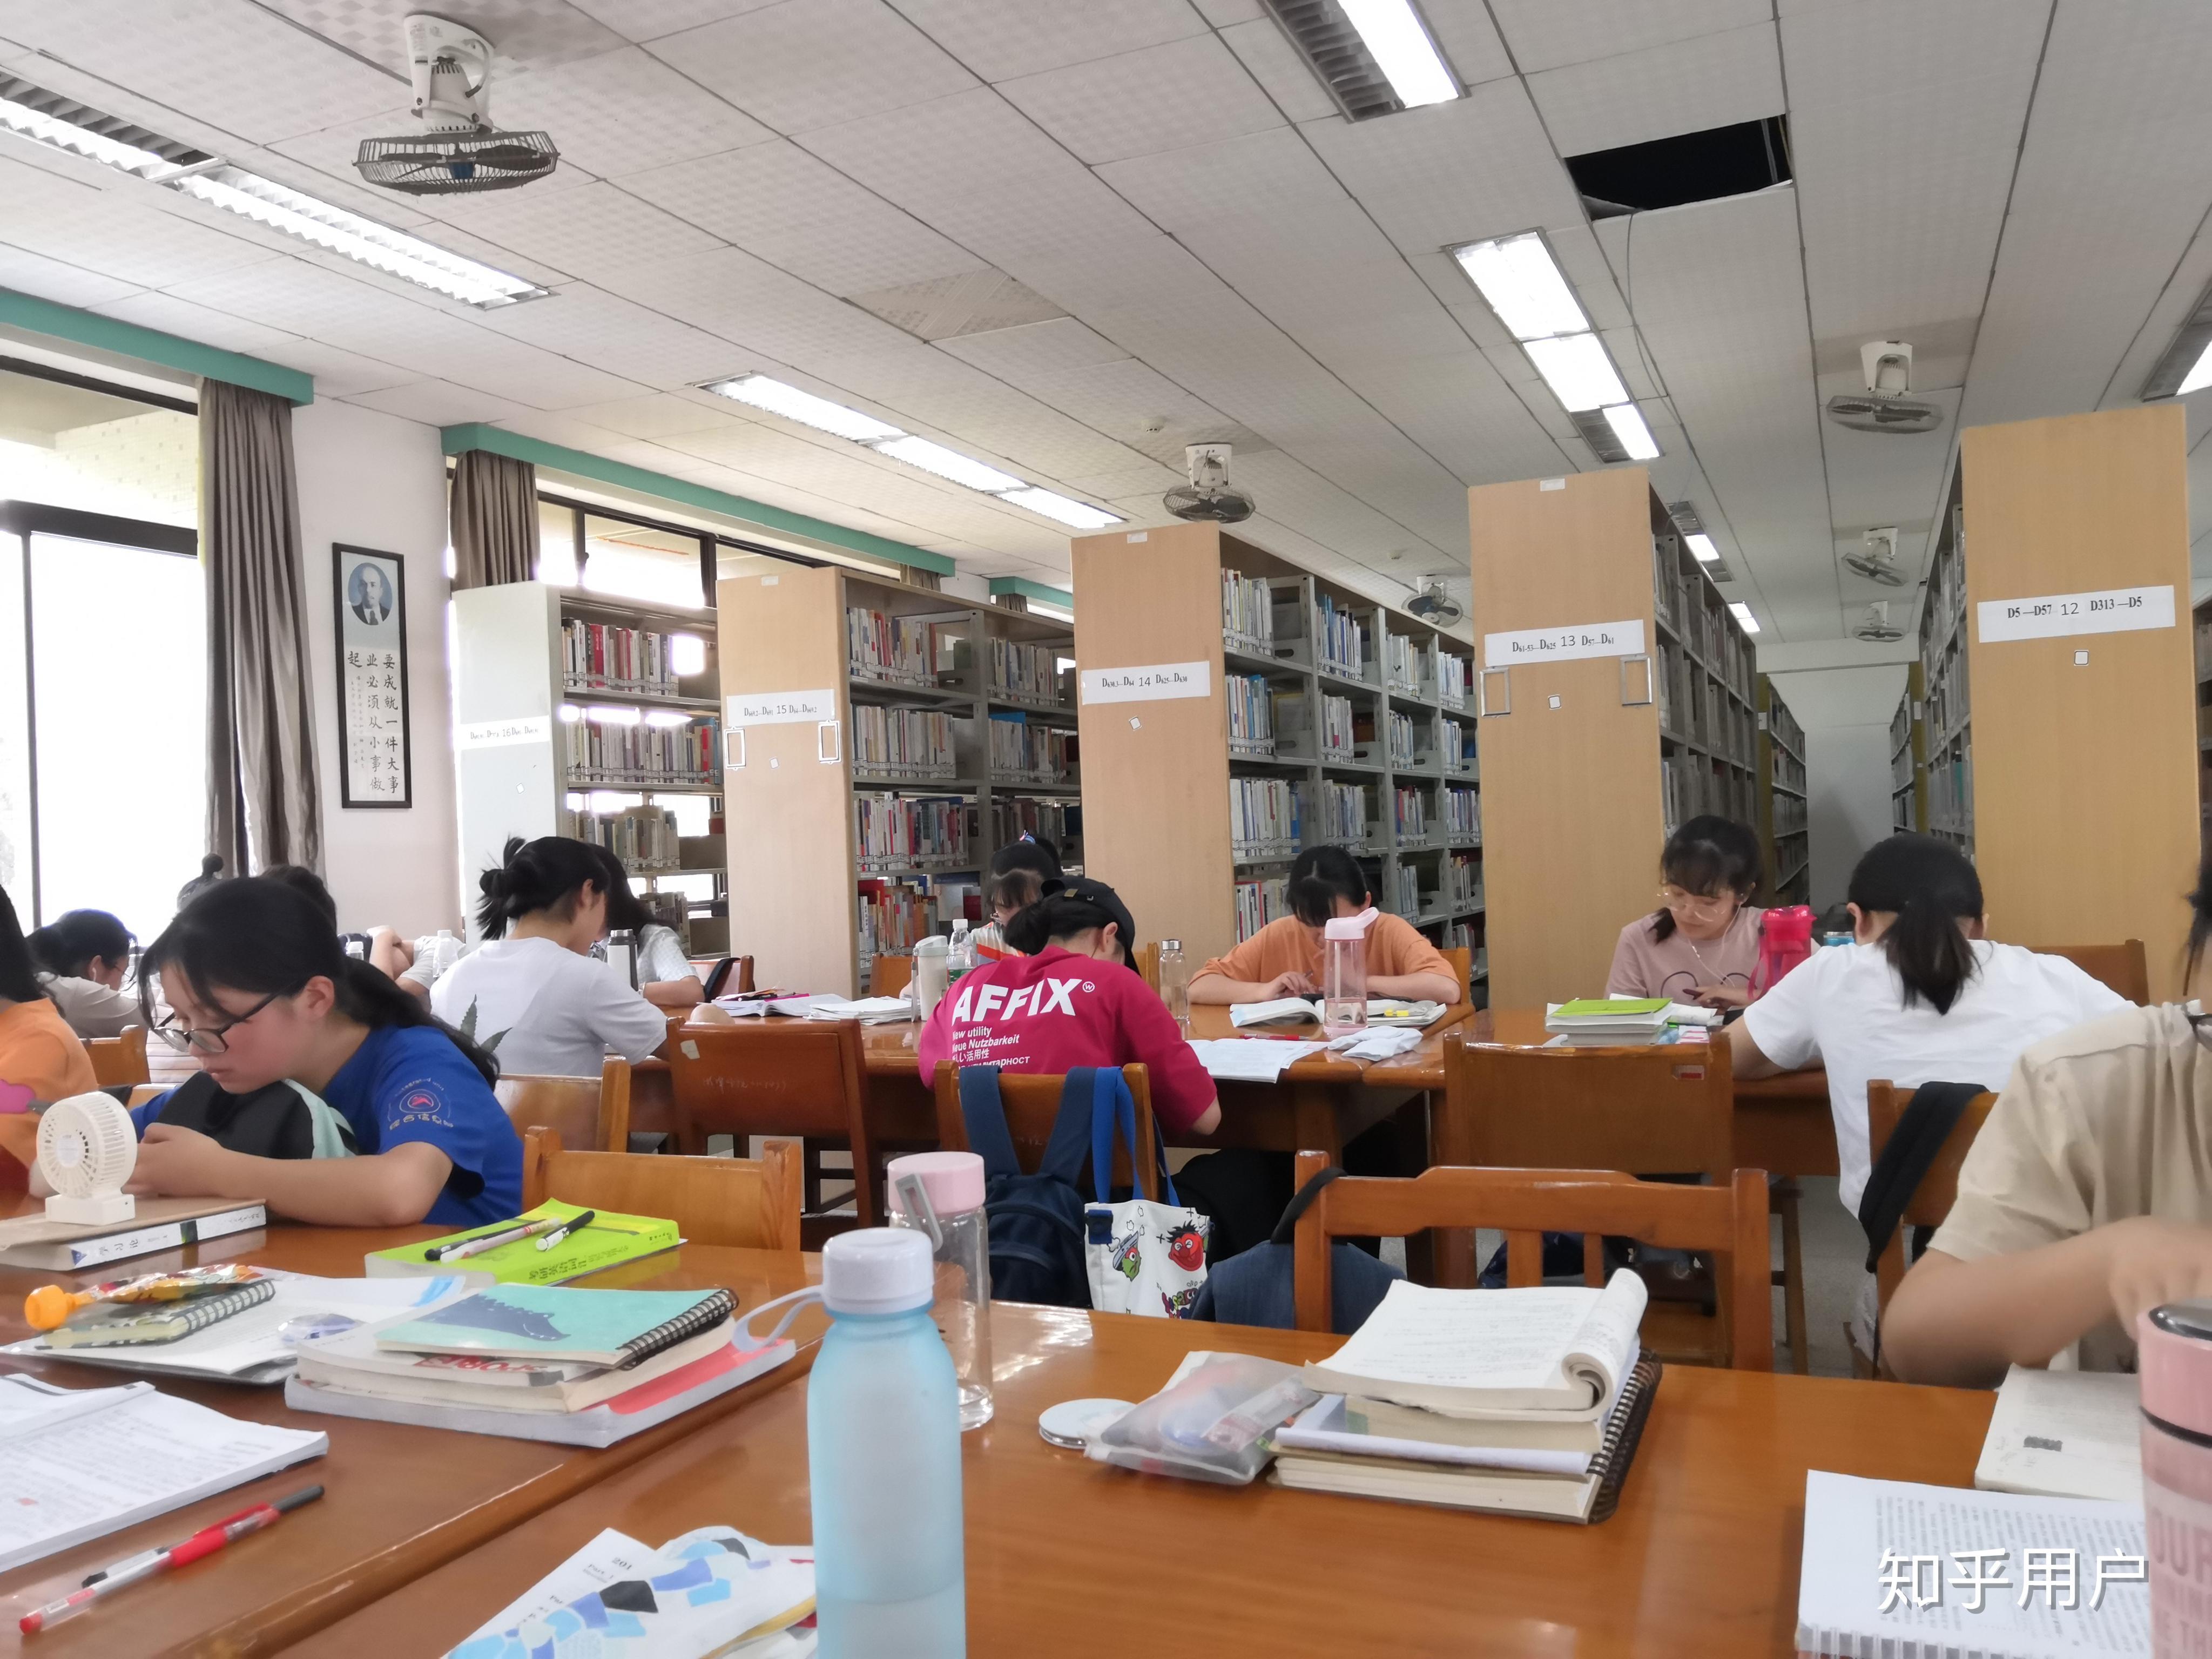 湖南科技大学的图书馆或教室环境如何?是否适合上自习? 